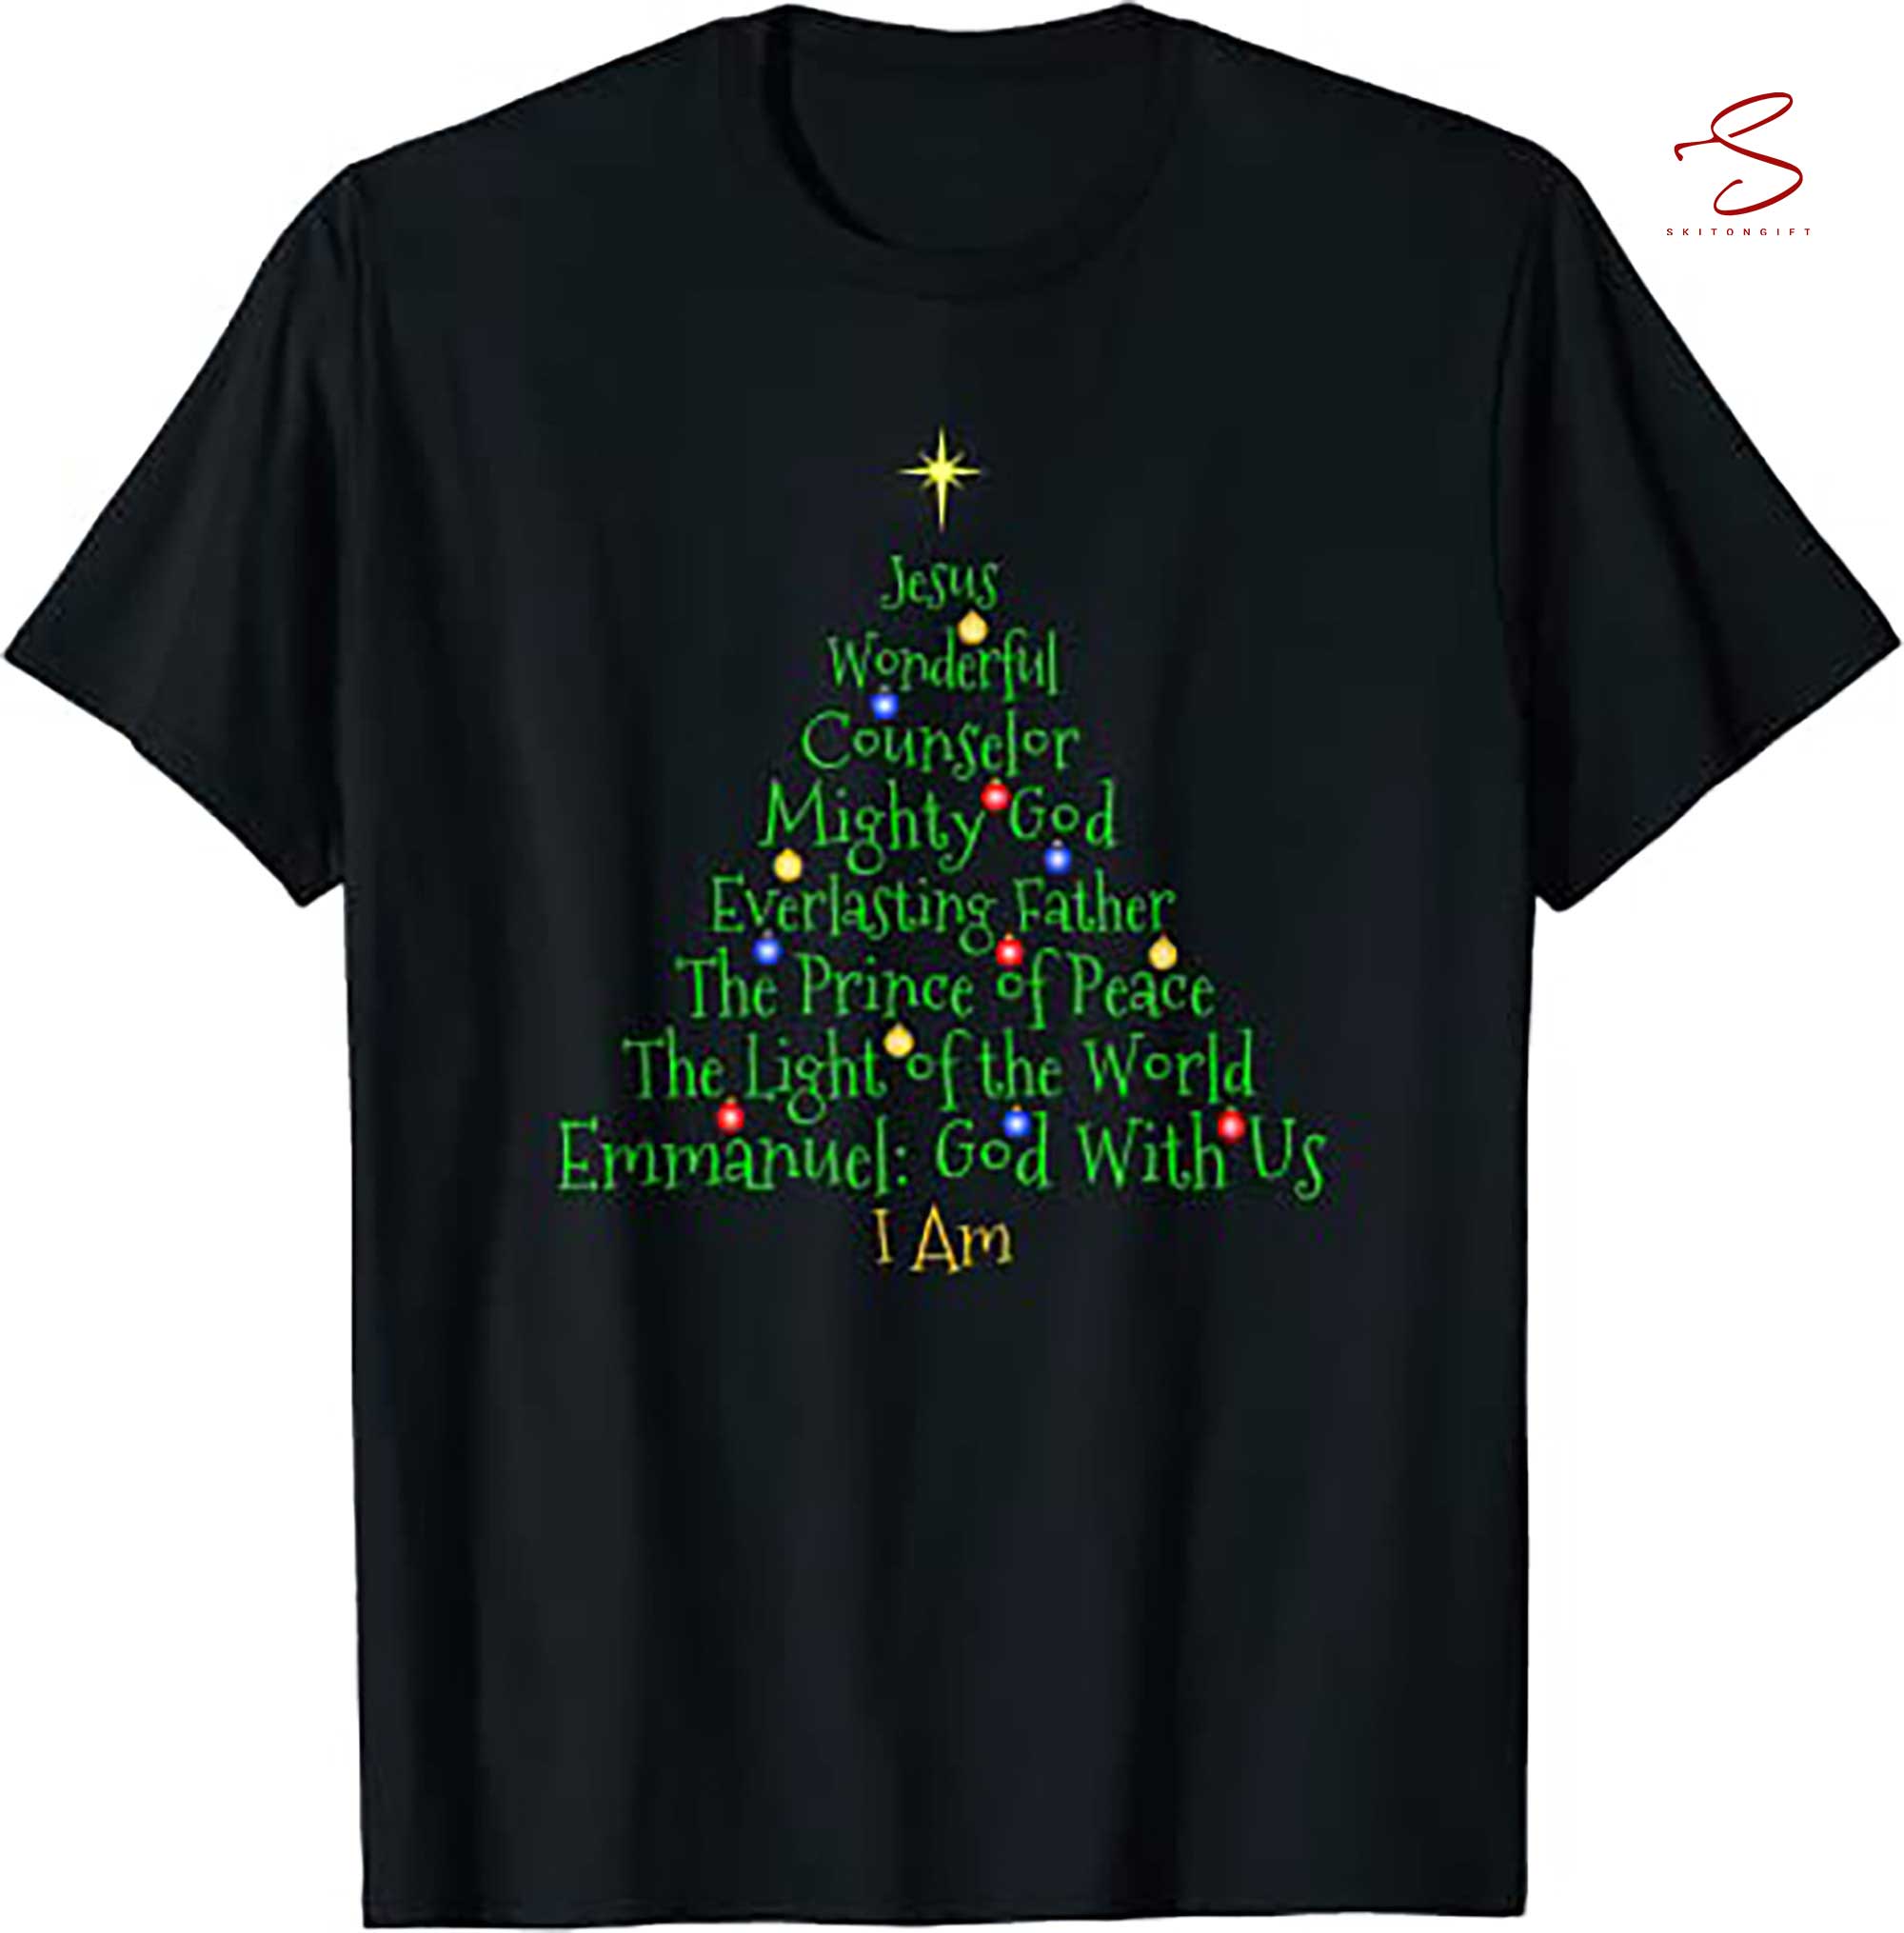 Skitongift Christmas Shirts Names Tree Shaped T Shirt